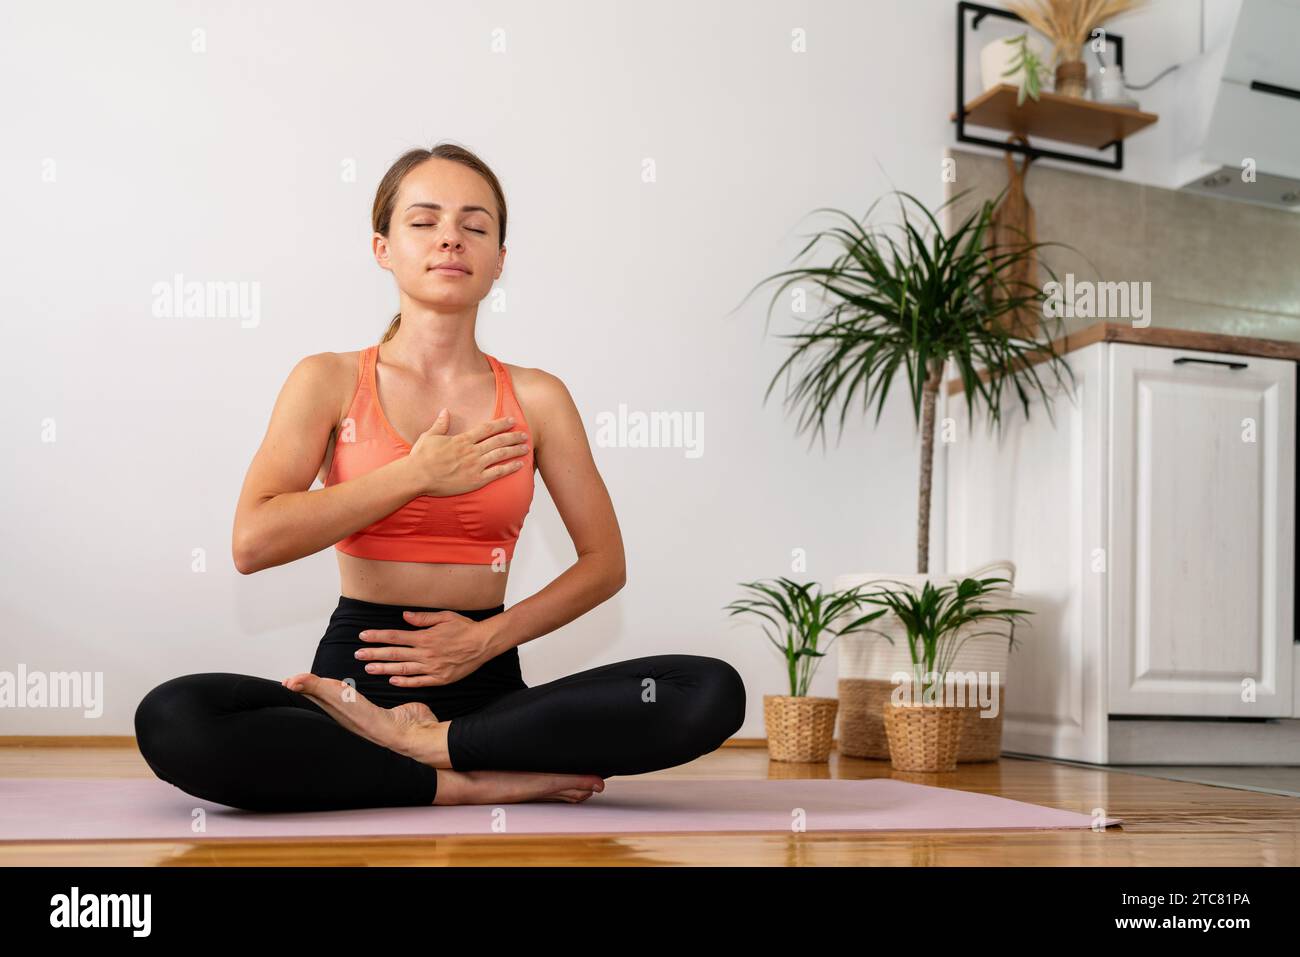 Ruhige Meditation zu Hause mit Yoga. Frau, die Atemübungen macht, während sie in Lotusposition auf Yogamatte sitzt. Stockfoto